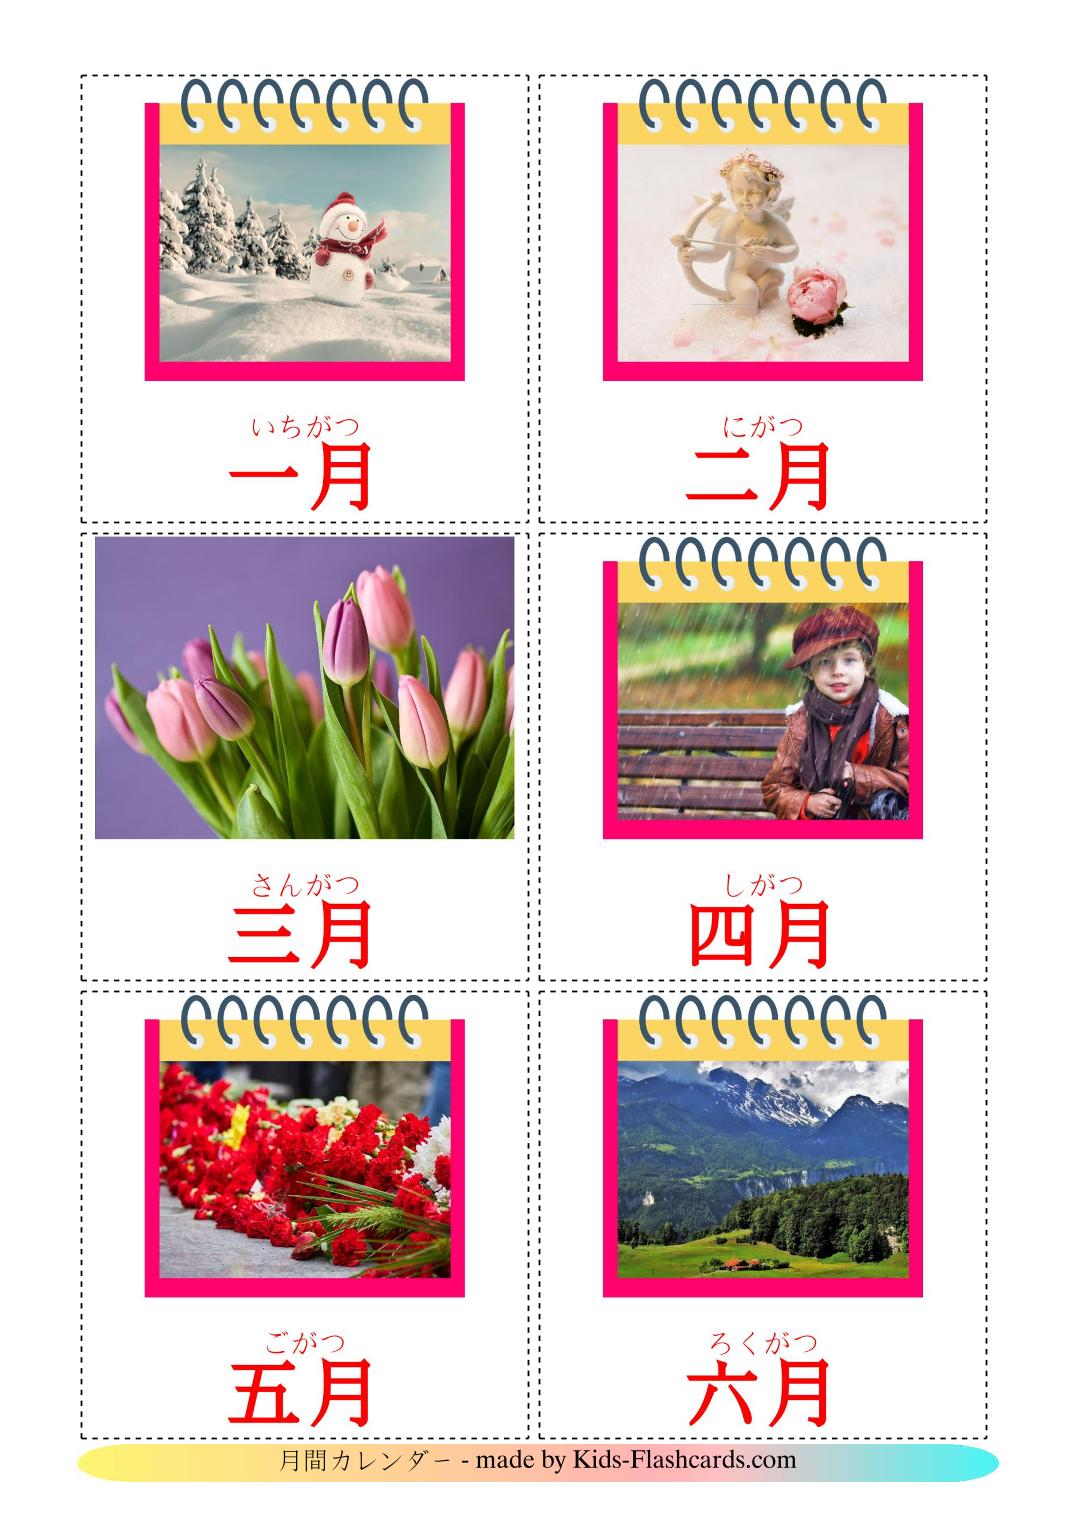 Les Mois de l'année - 12 Flashcards japonais imprimables gratuitement